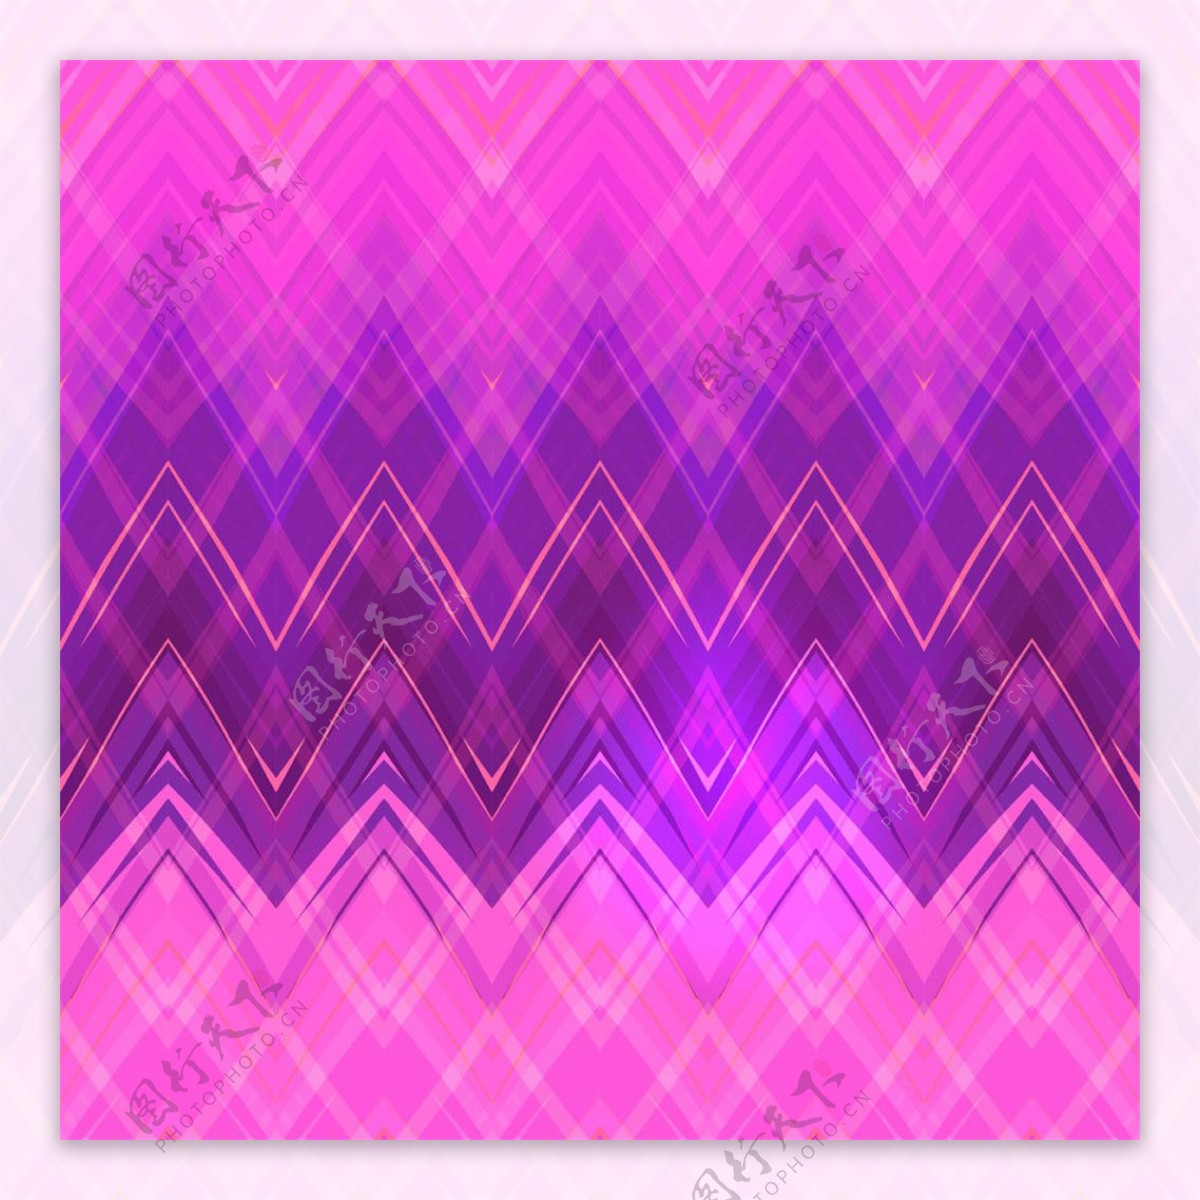 炫彩紫色折纹民族背景图片